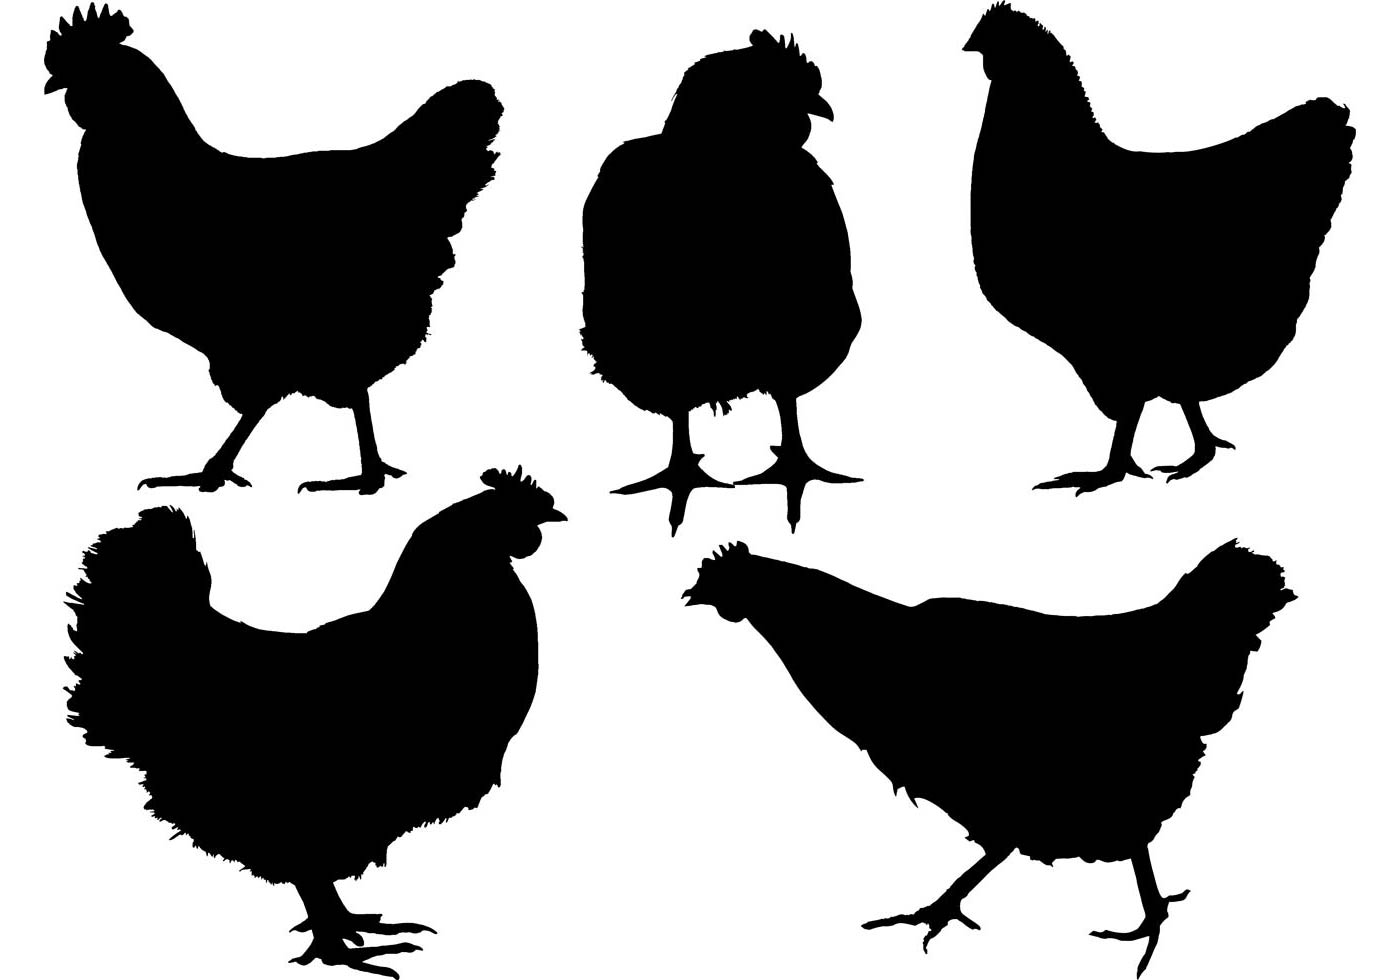 Chicken Free Vector Art - (1016 Free Downloads)